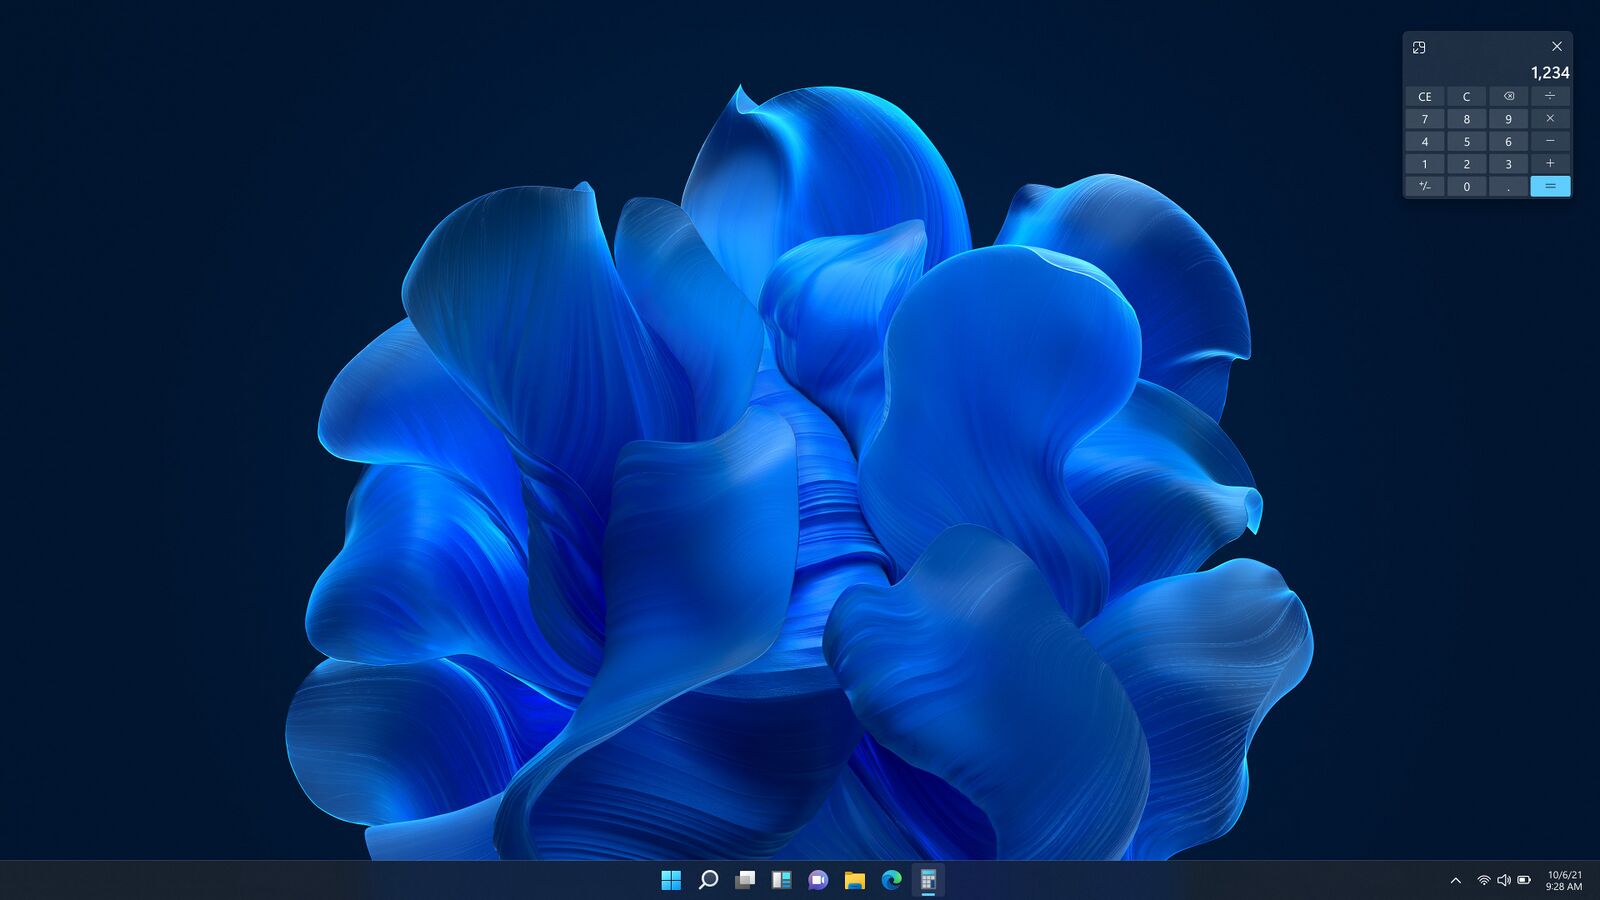 [图] Windows 11早期版本“Bloom”壁纸曝光